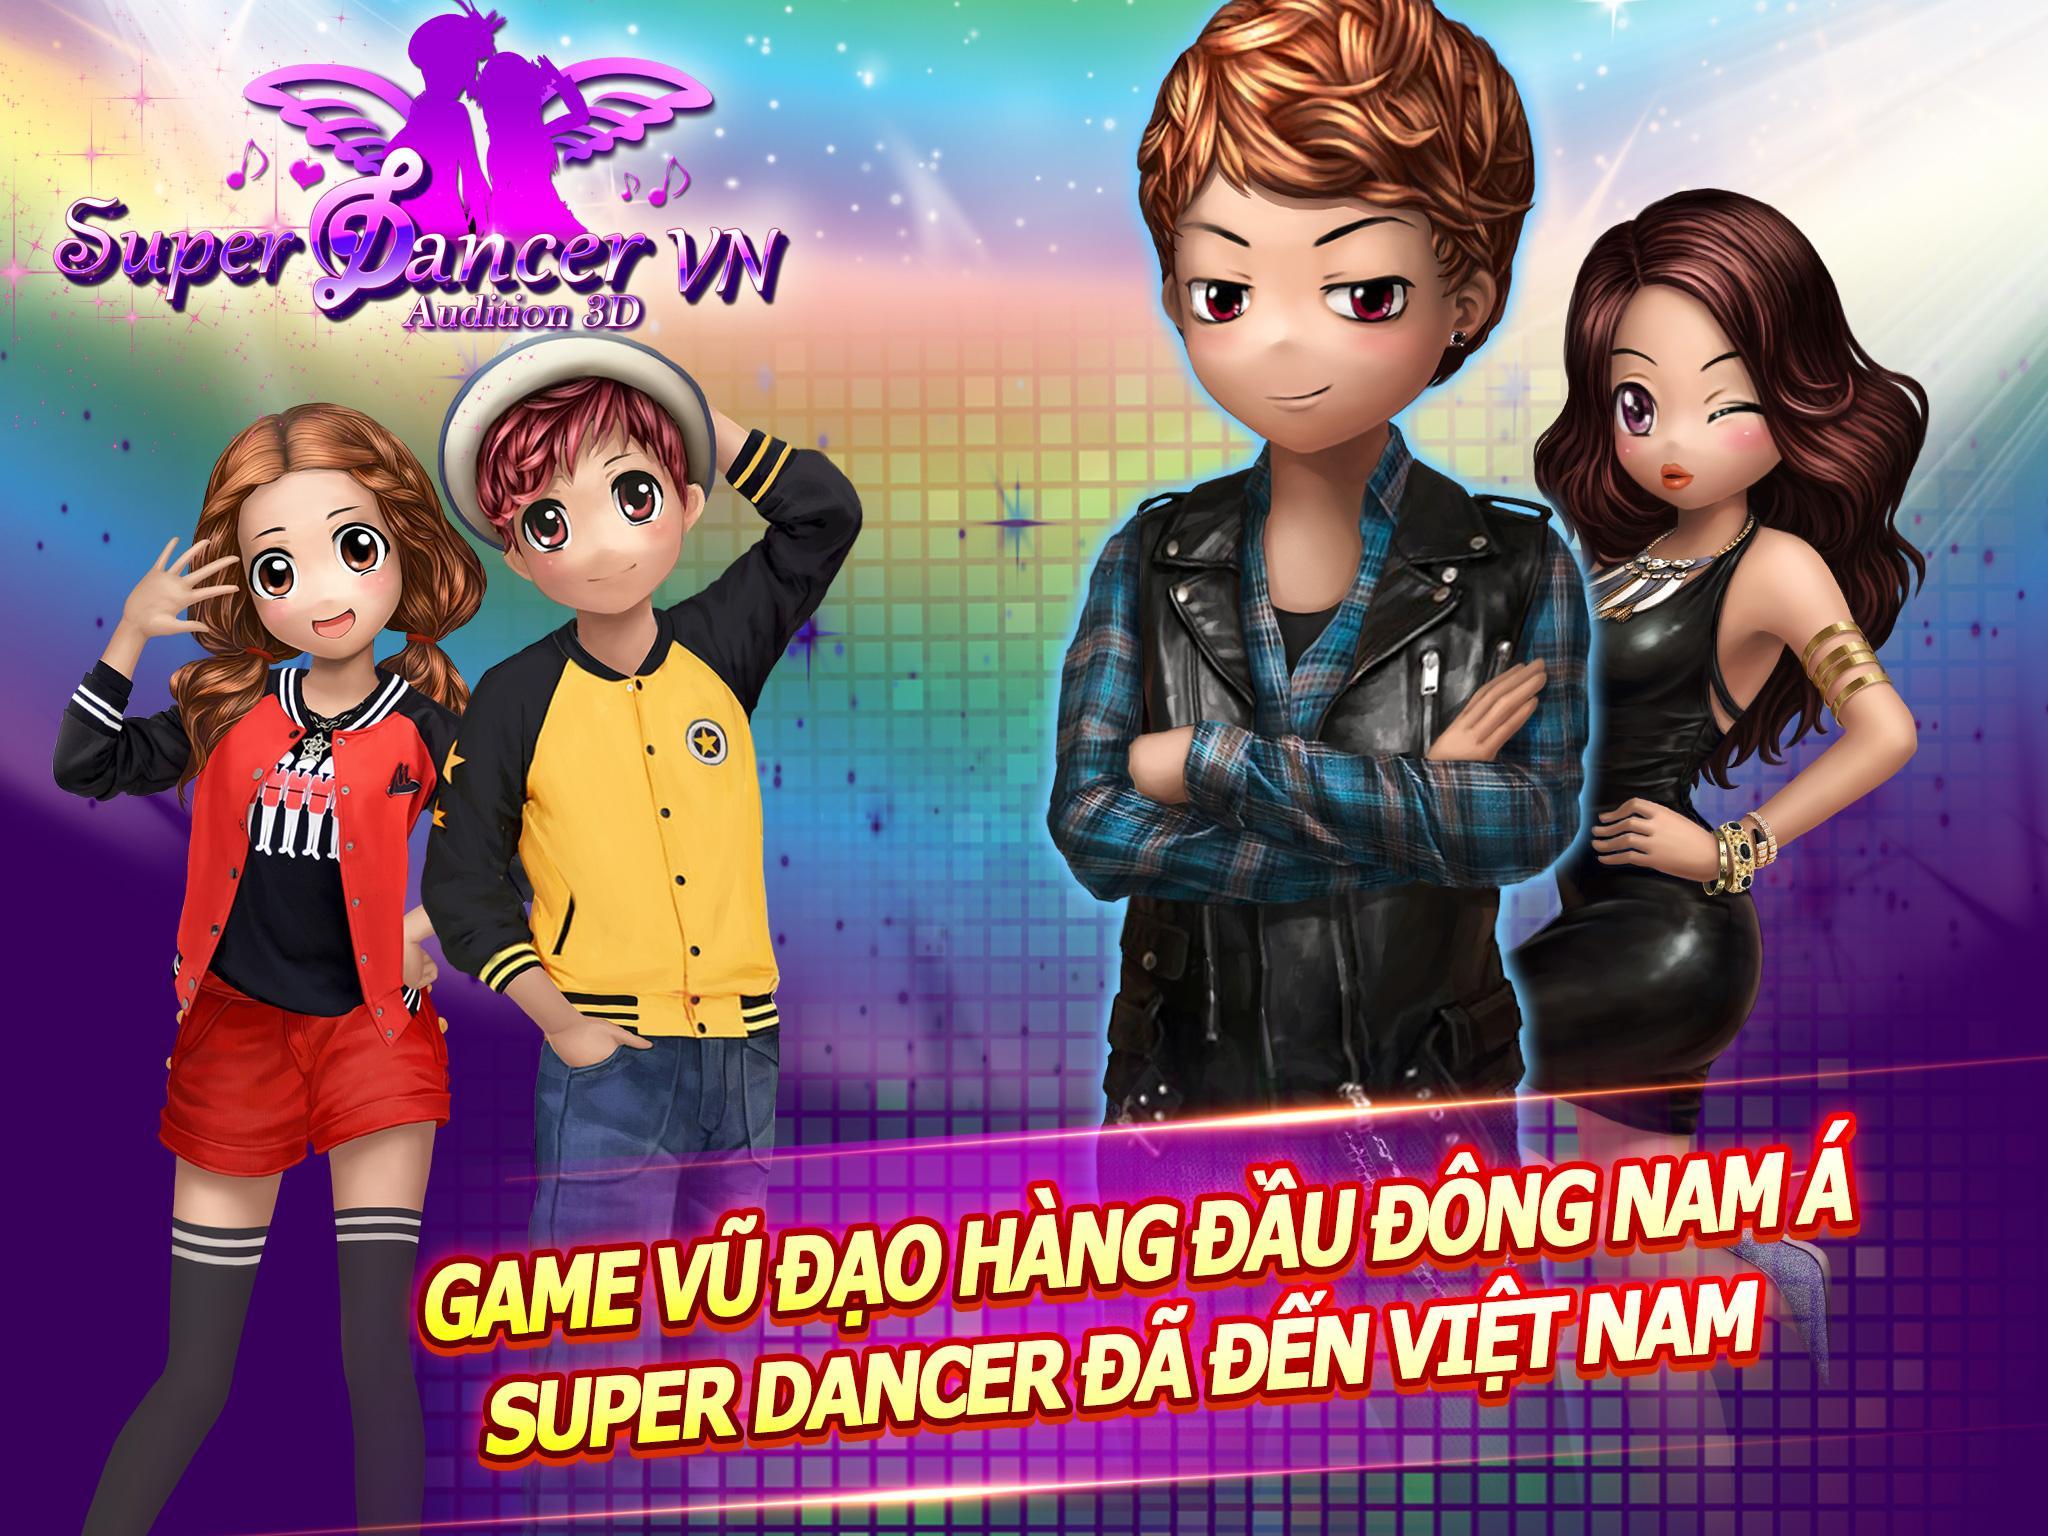 Screenshot 1 of Super Dancer VN - Audición 3D 